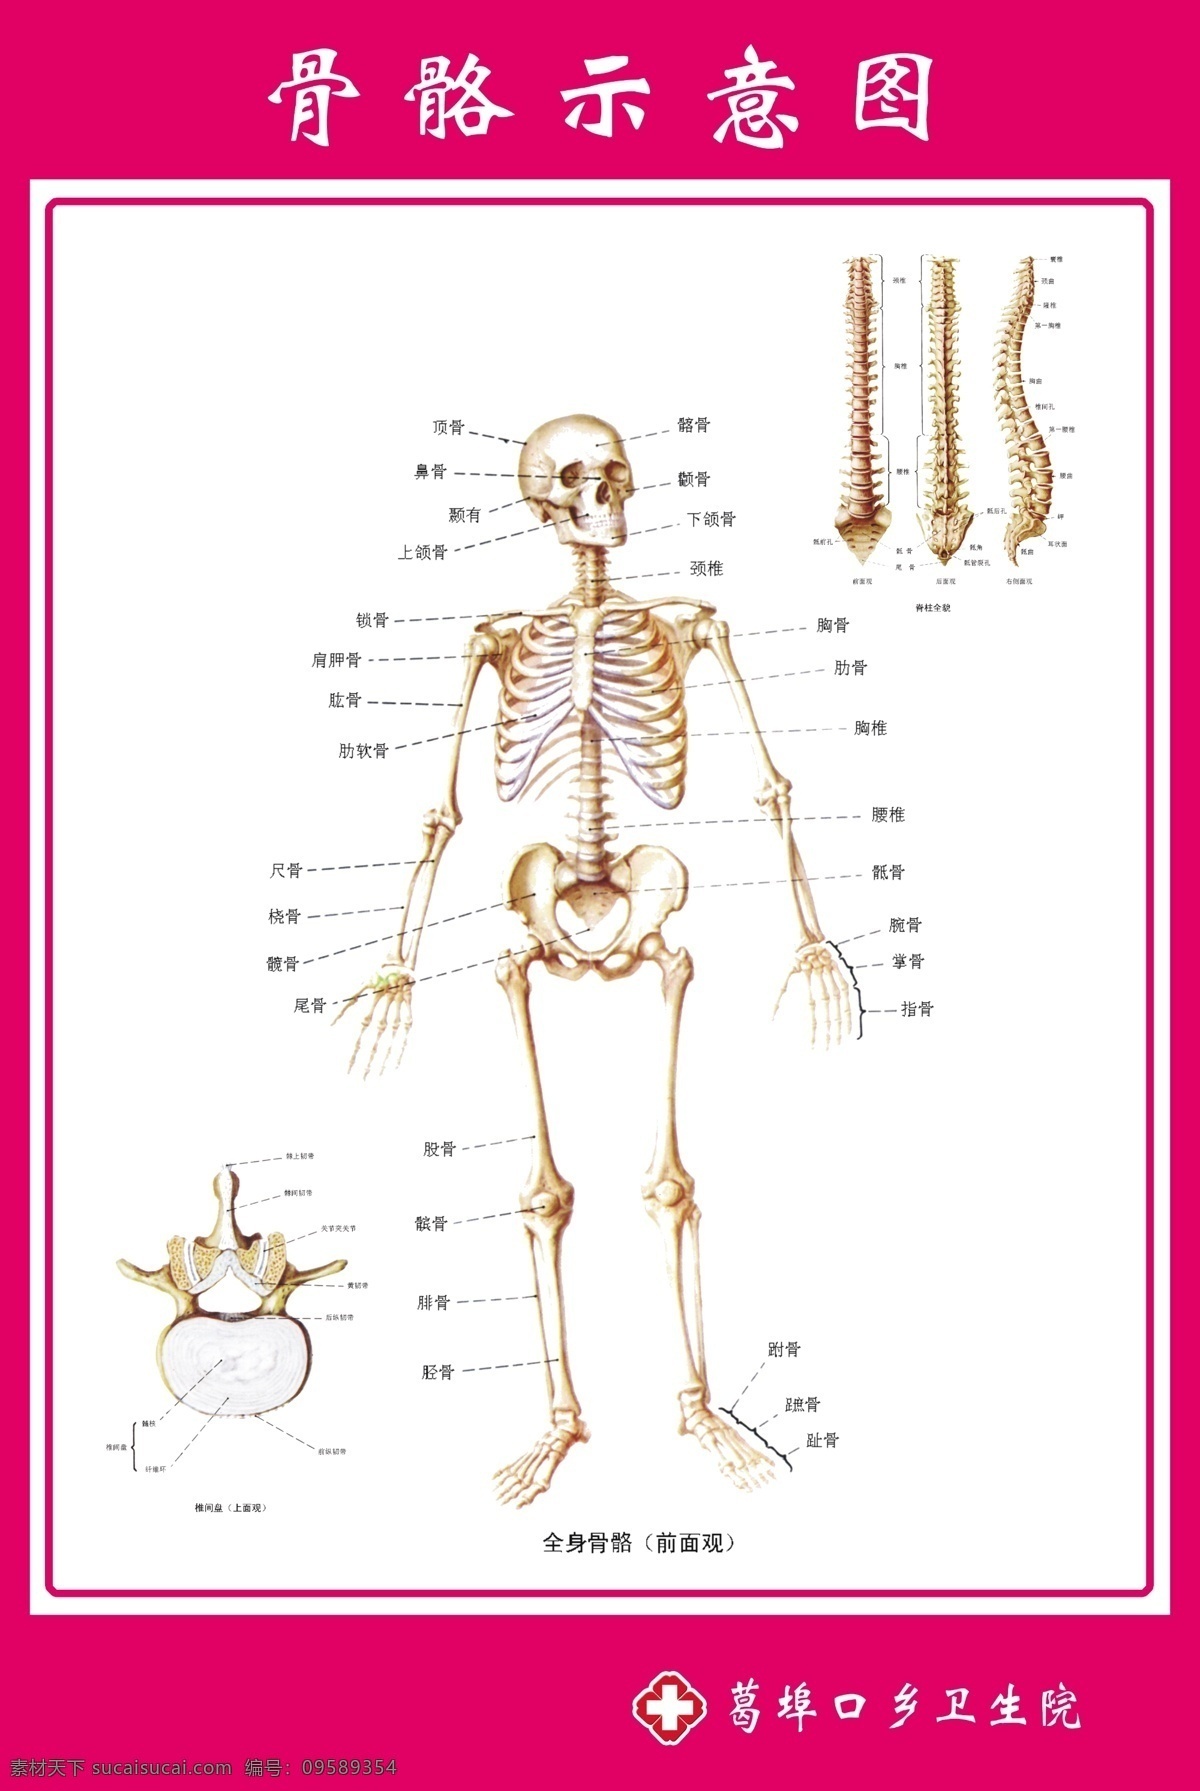 骨骼示意图解 骨骼示意图 骨骼 骨骼解剖图 示意图 解剖图 医院示意图 医院解剖图 门诊示意图 源文件